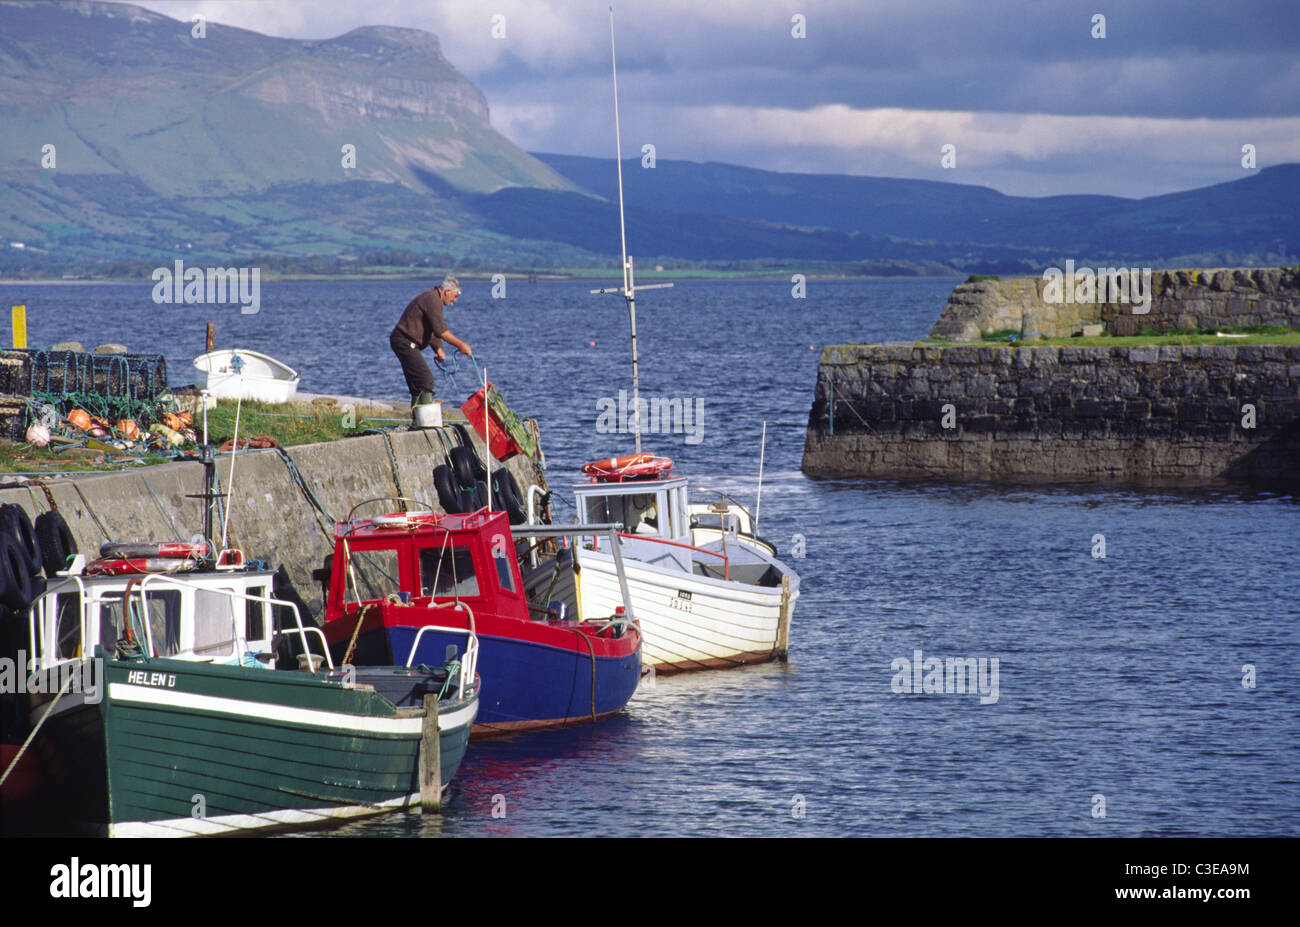 Pescador la descarga en puerto Raghly, condado de Sligo, Irlanda. Foto de stock